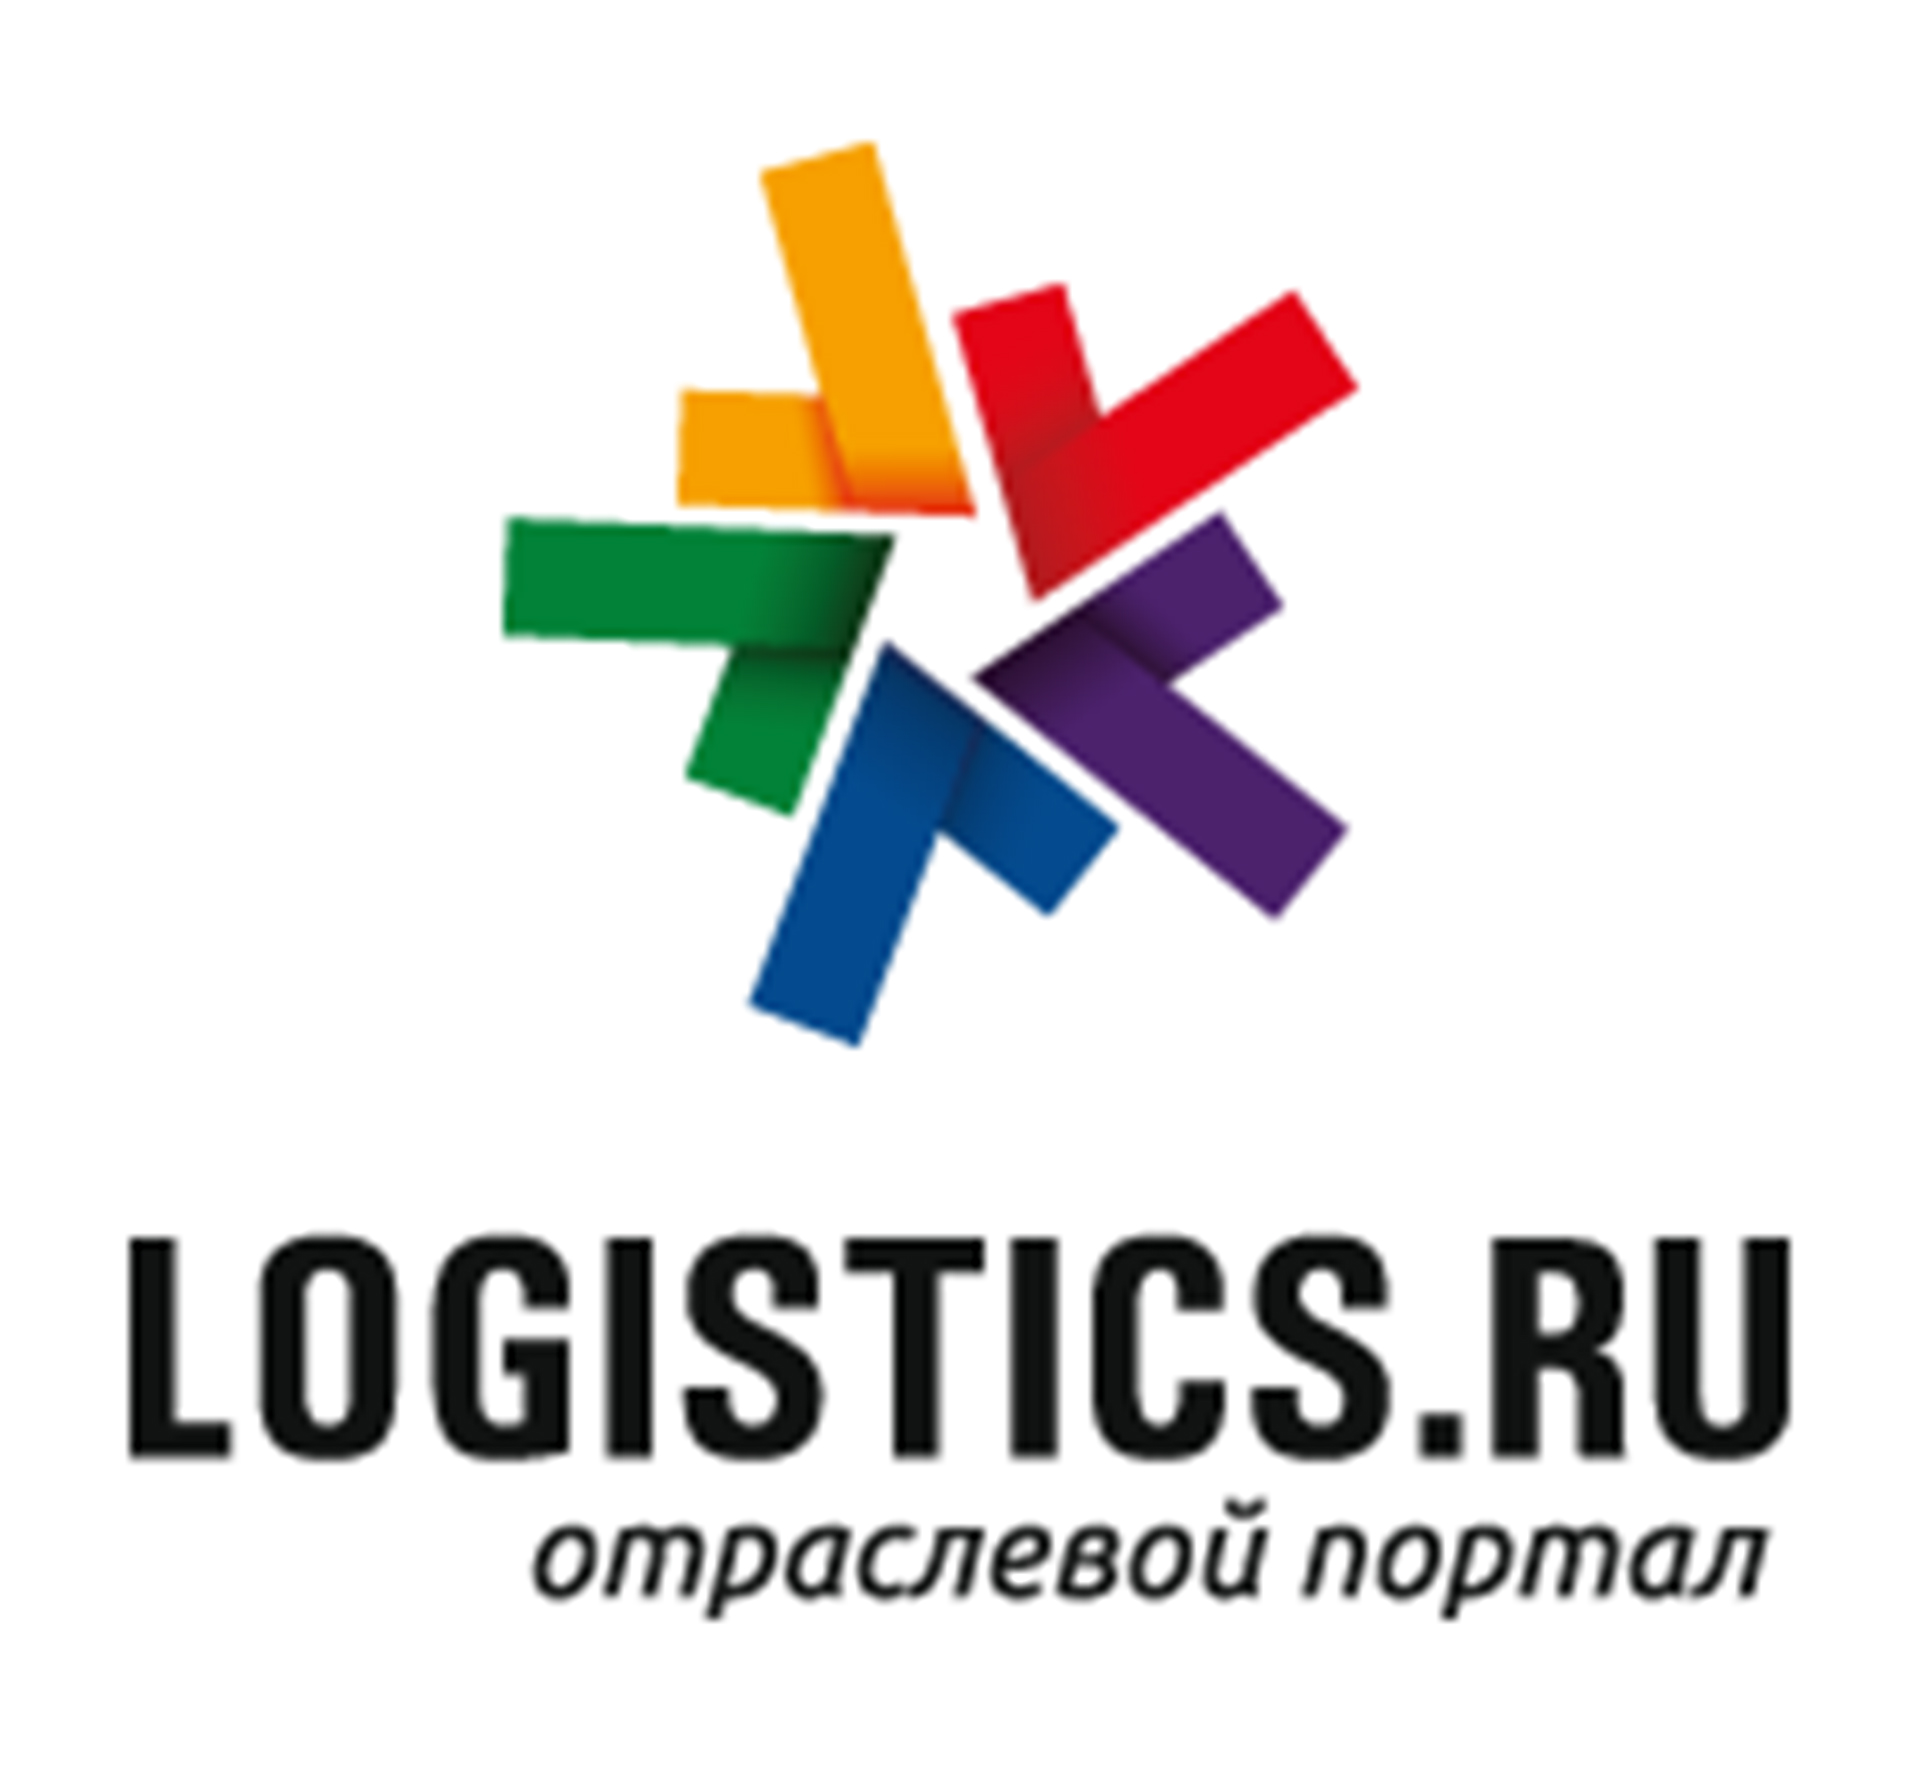 Отраслевой портал Logistics.ru